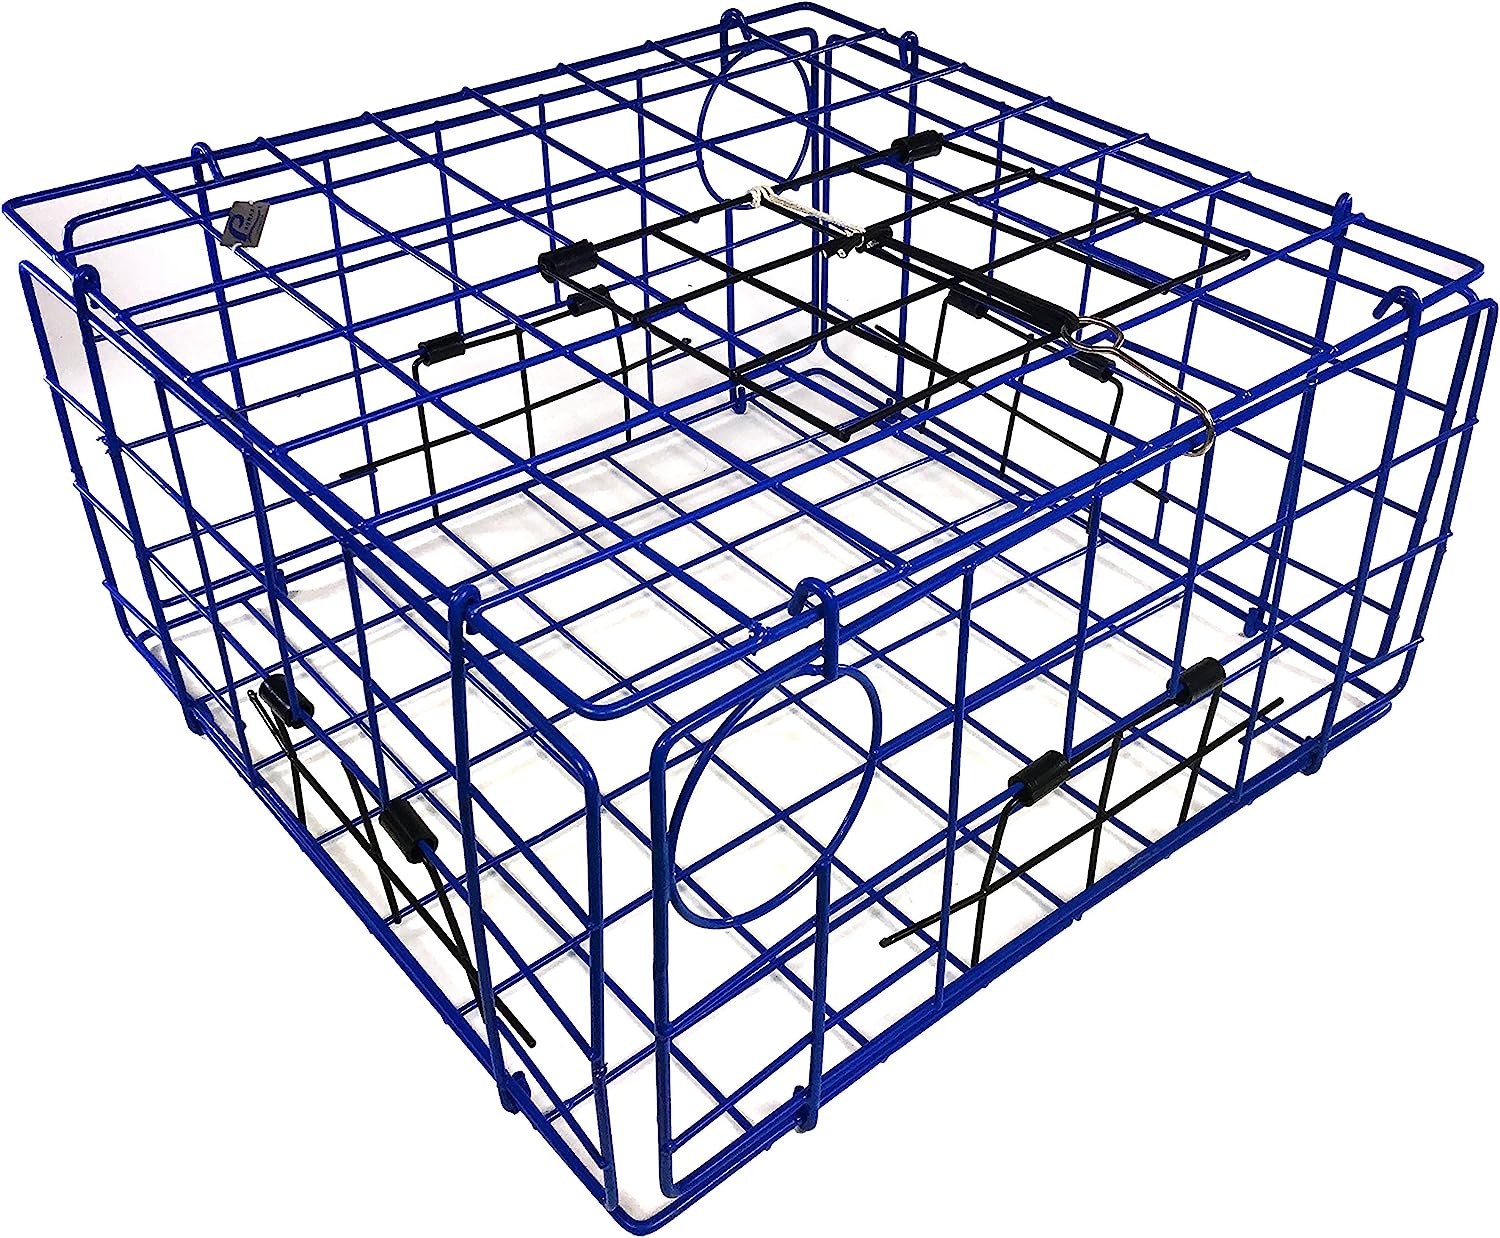 Promar TR-555 Folding Crab Trap with top Door 24″” x 22″” x 13″””, Multi   price checker   price checker Description Gallery